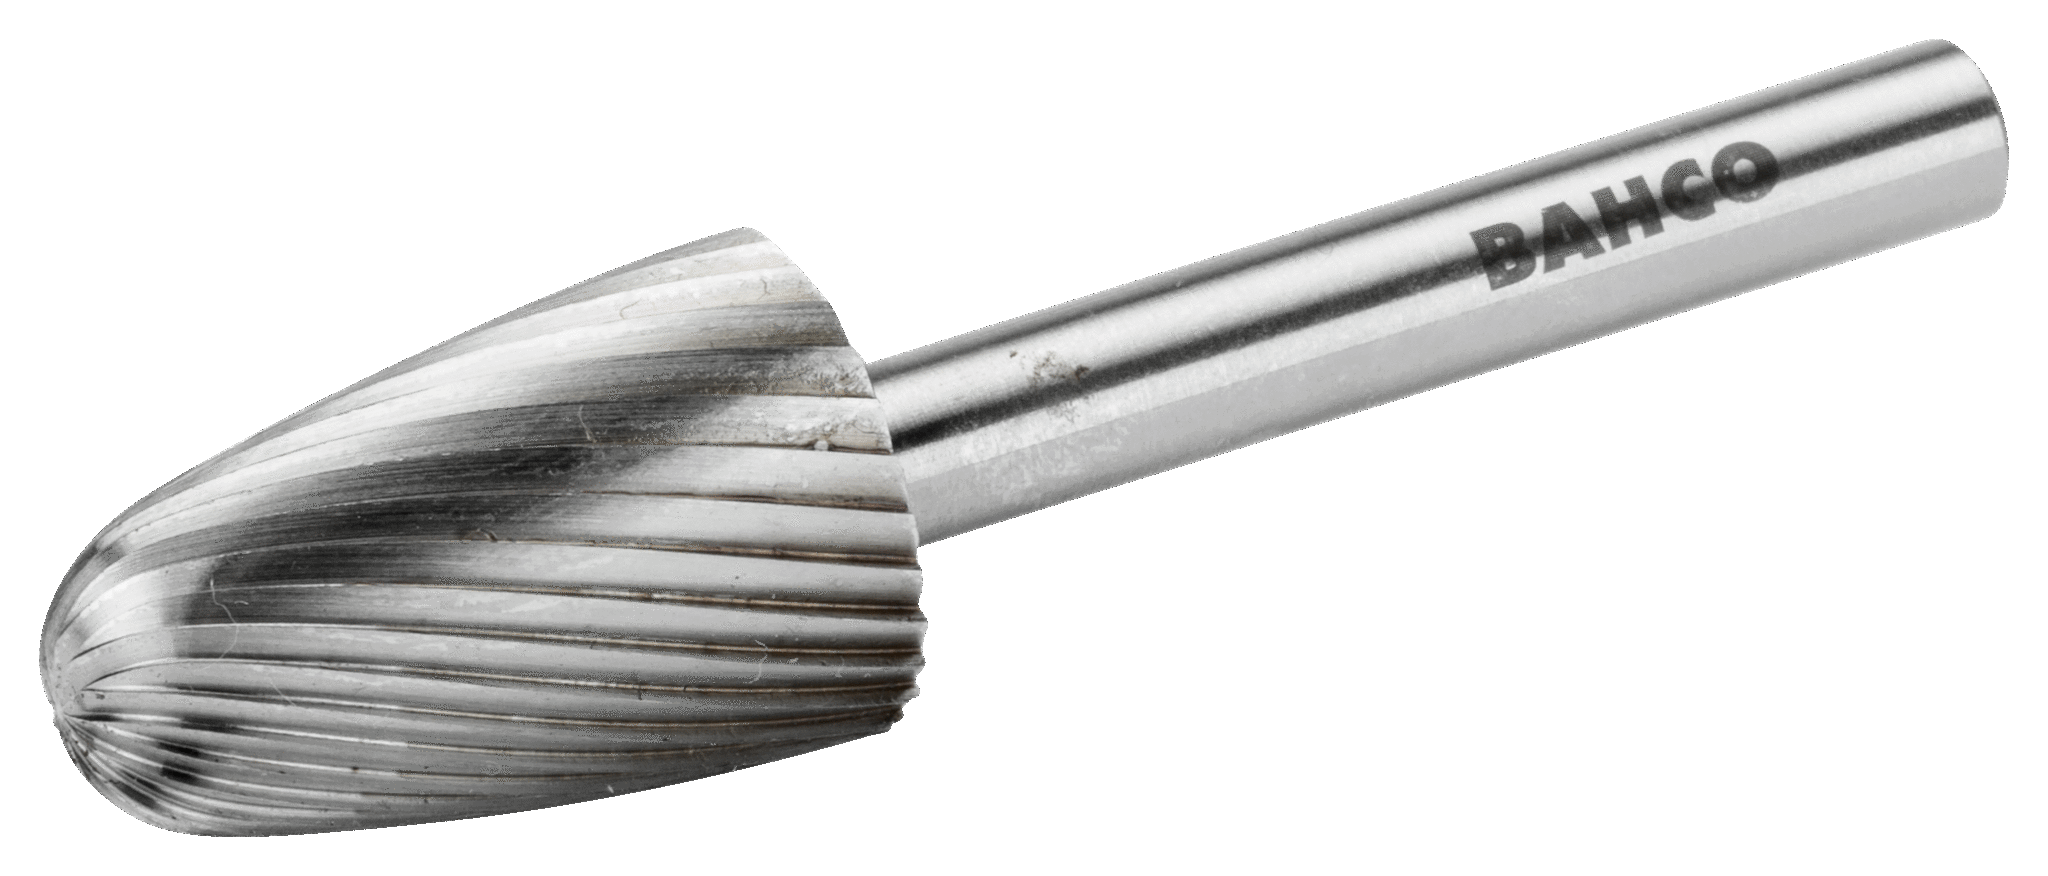 картинка Борфрезы из быстрорежущей стали с древовидной скругленной головкой BAHCO HSSG-F0618M от магазина "Элит-инструмент"